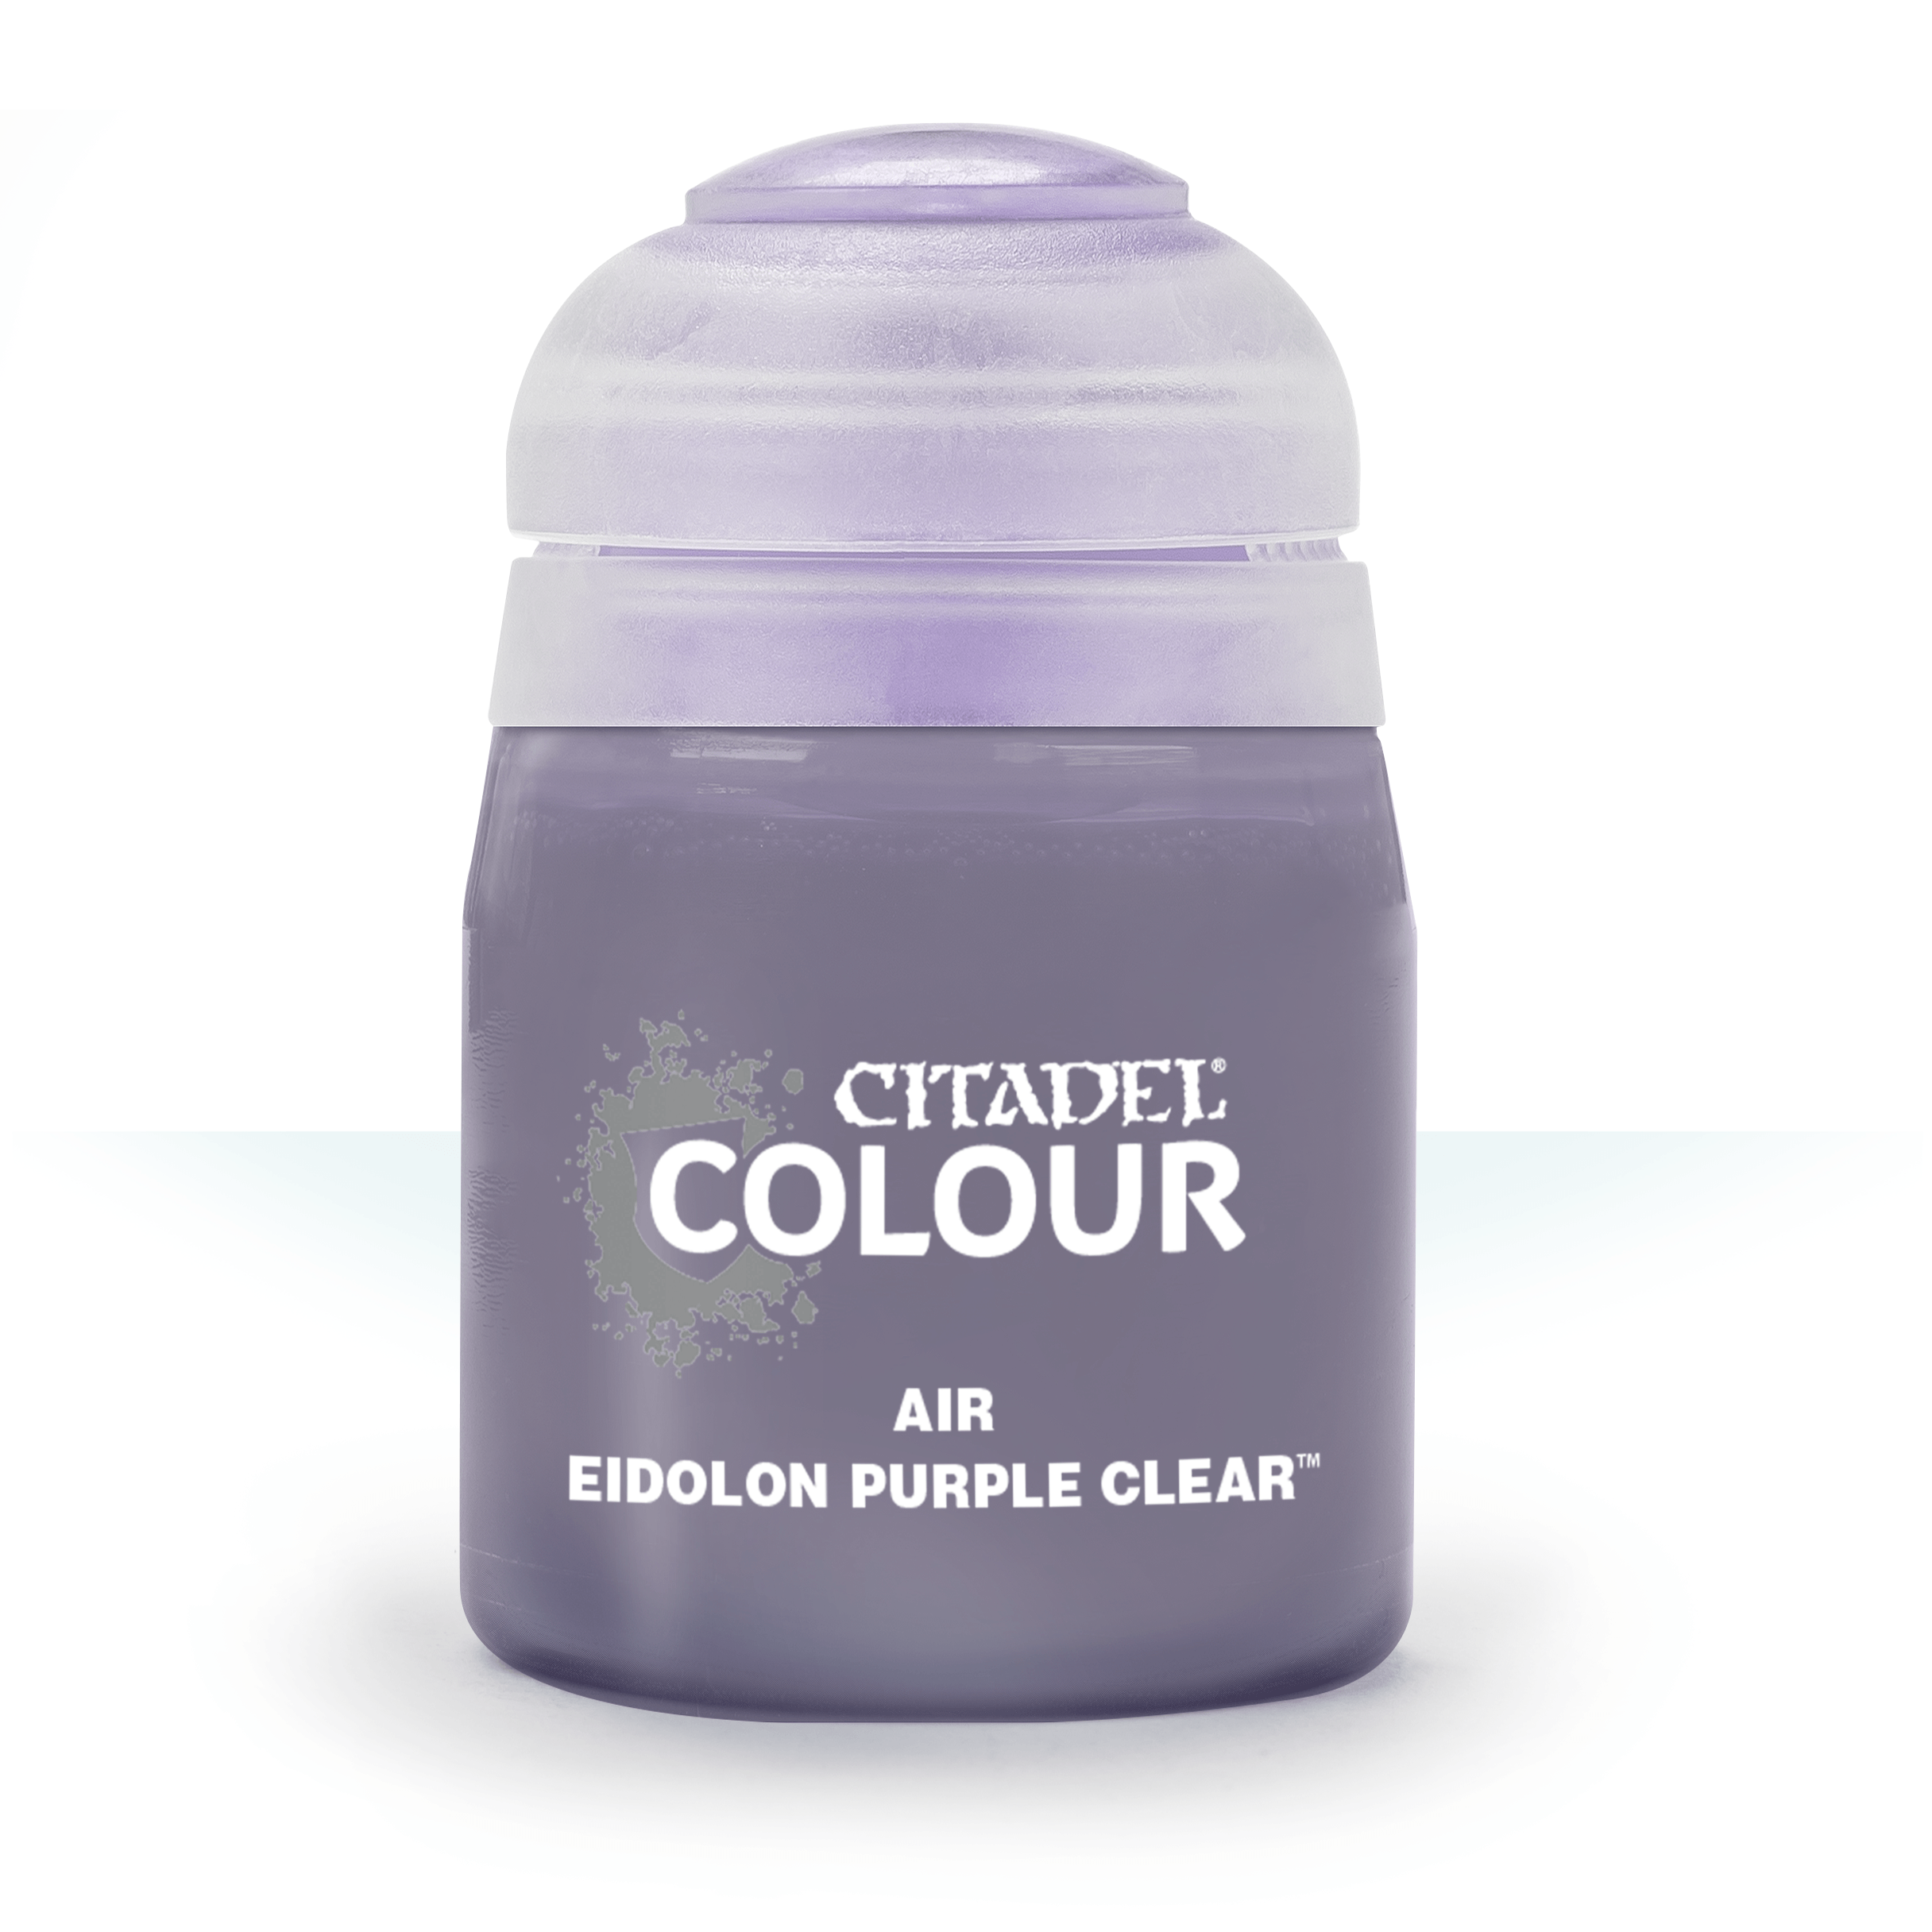 Air Eidolon Purple Clear - Citadel Colour - 24 ml